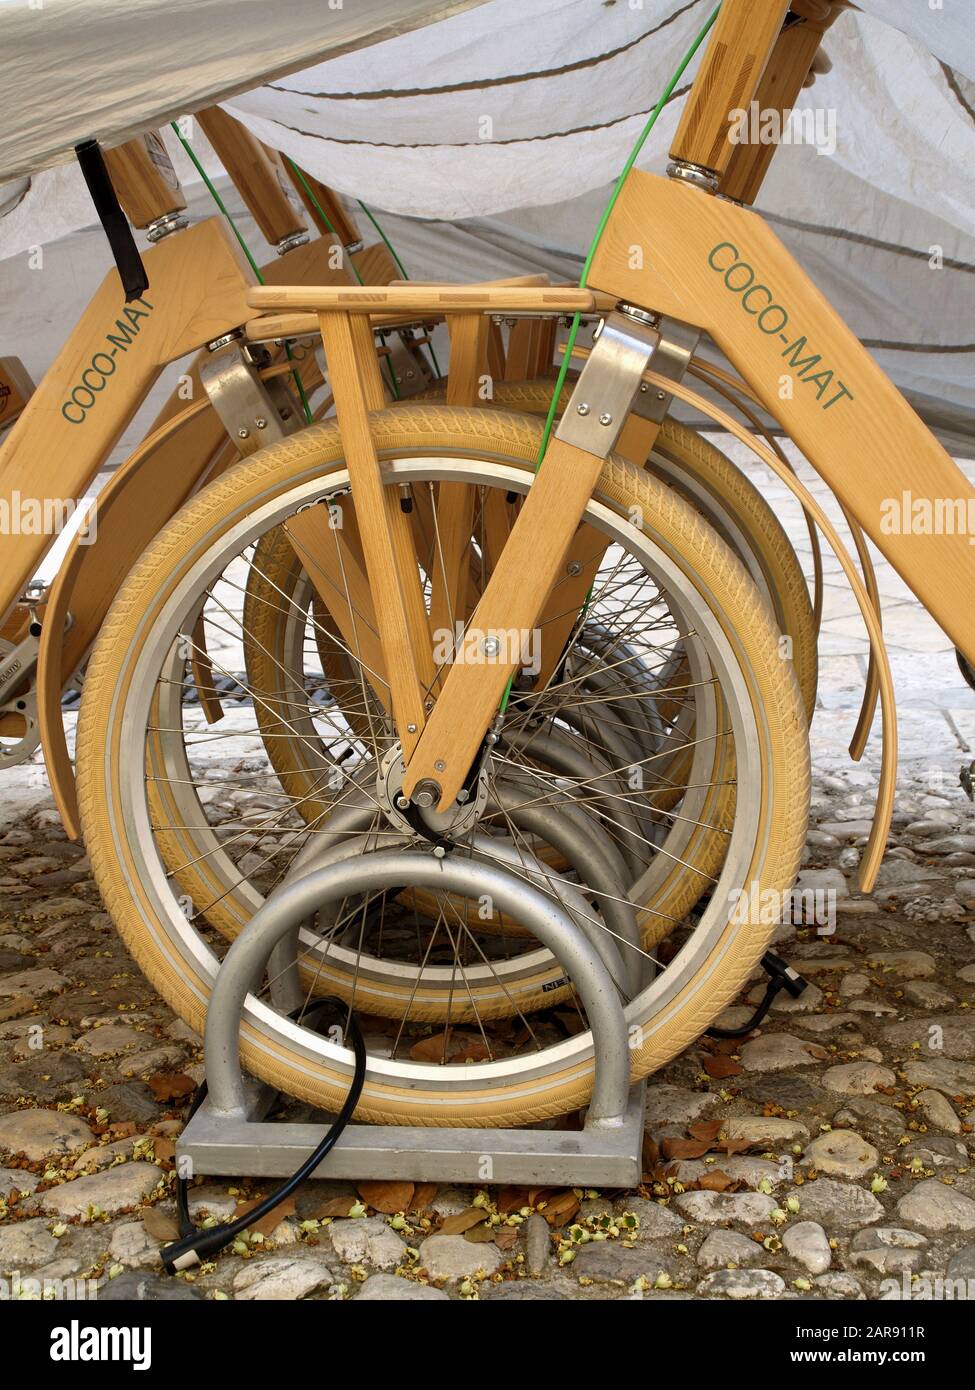 Coco-Mat wooden bikes in Corfu Town, Kerkyra, Greece Stock Photo - Alamy